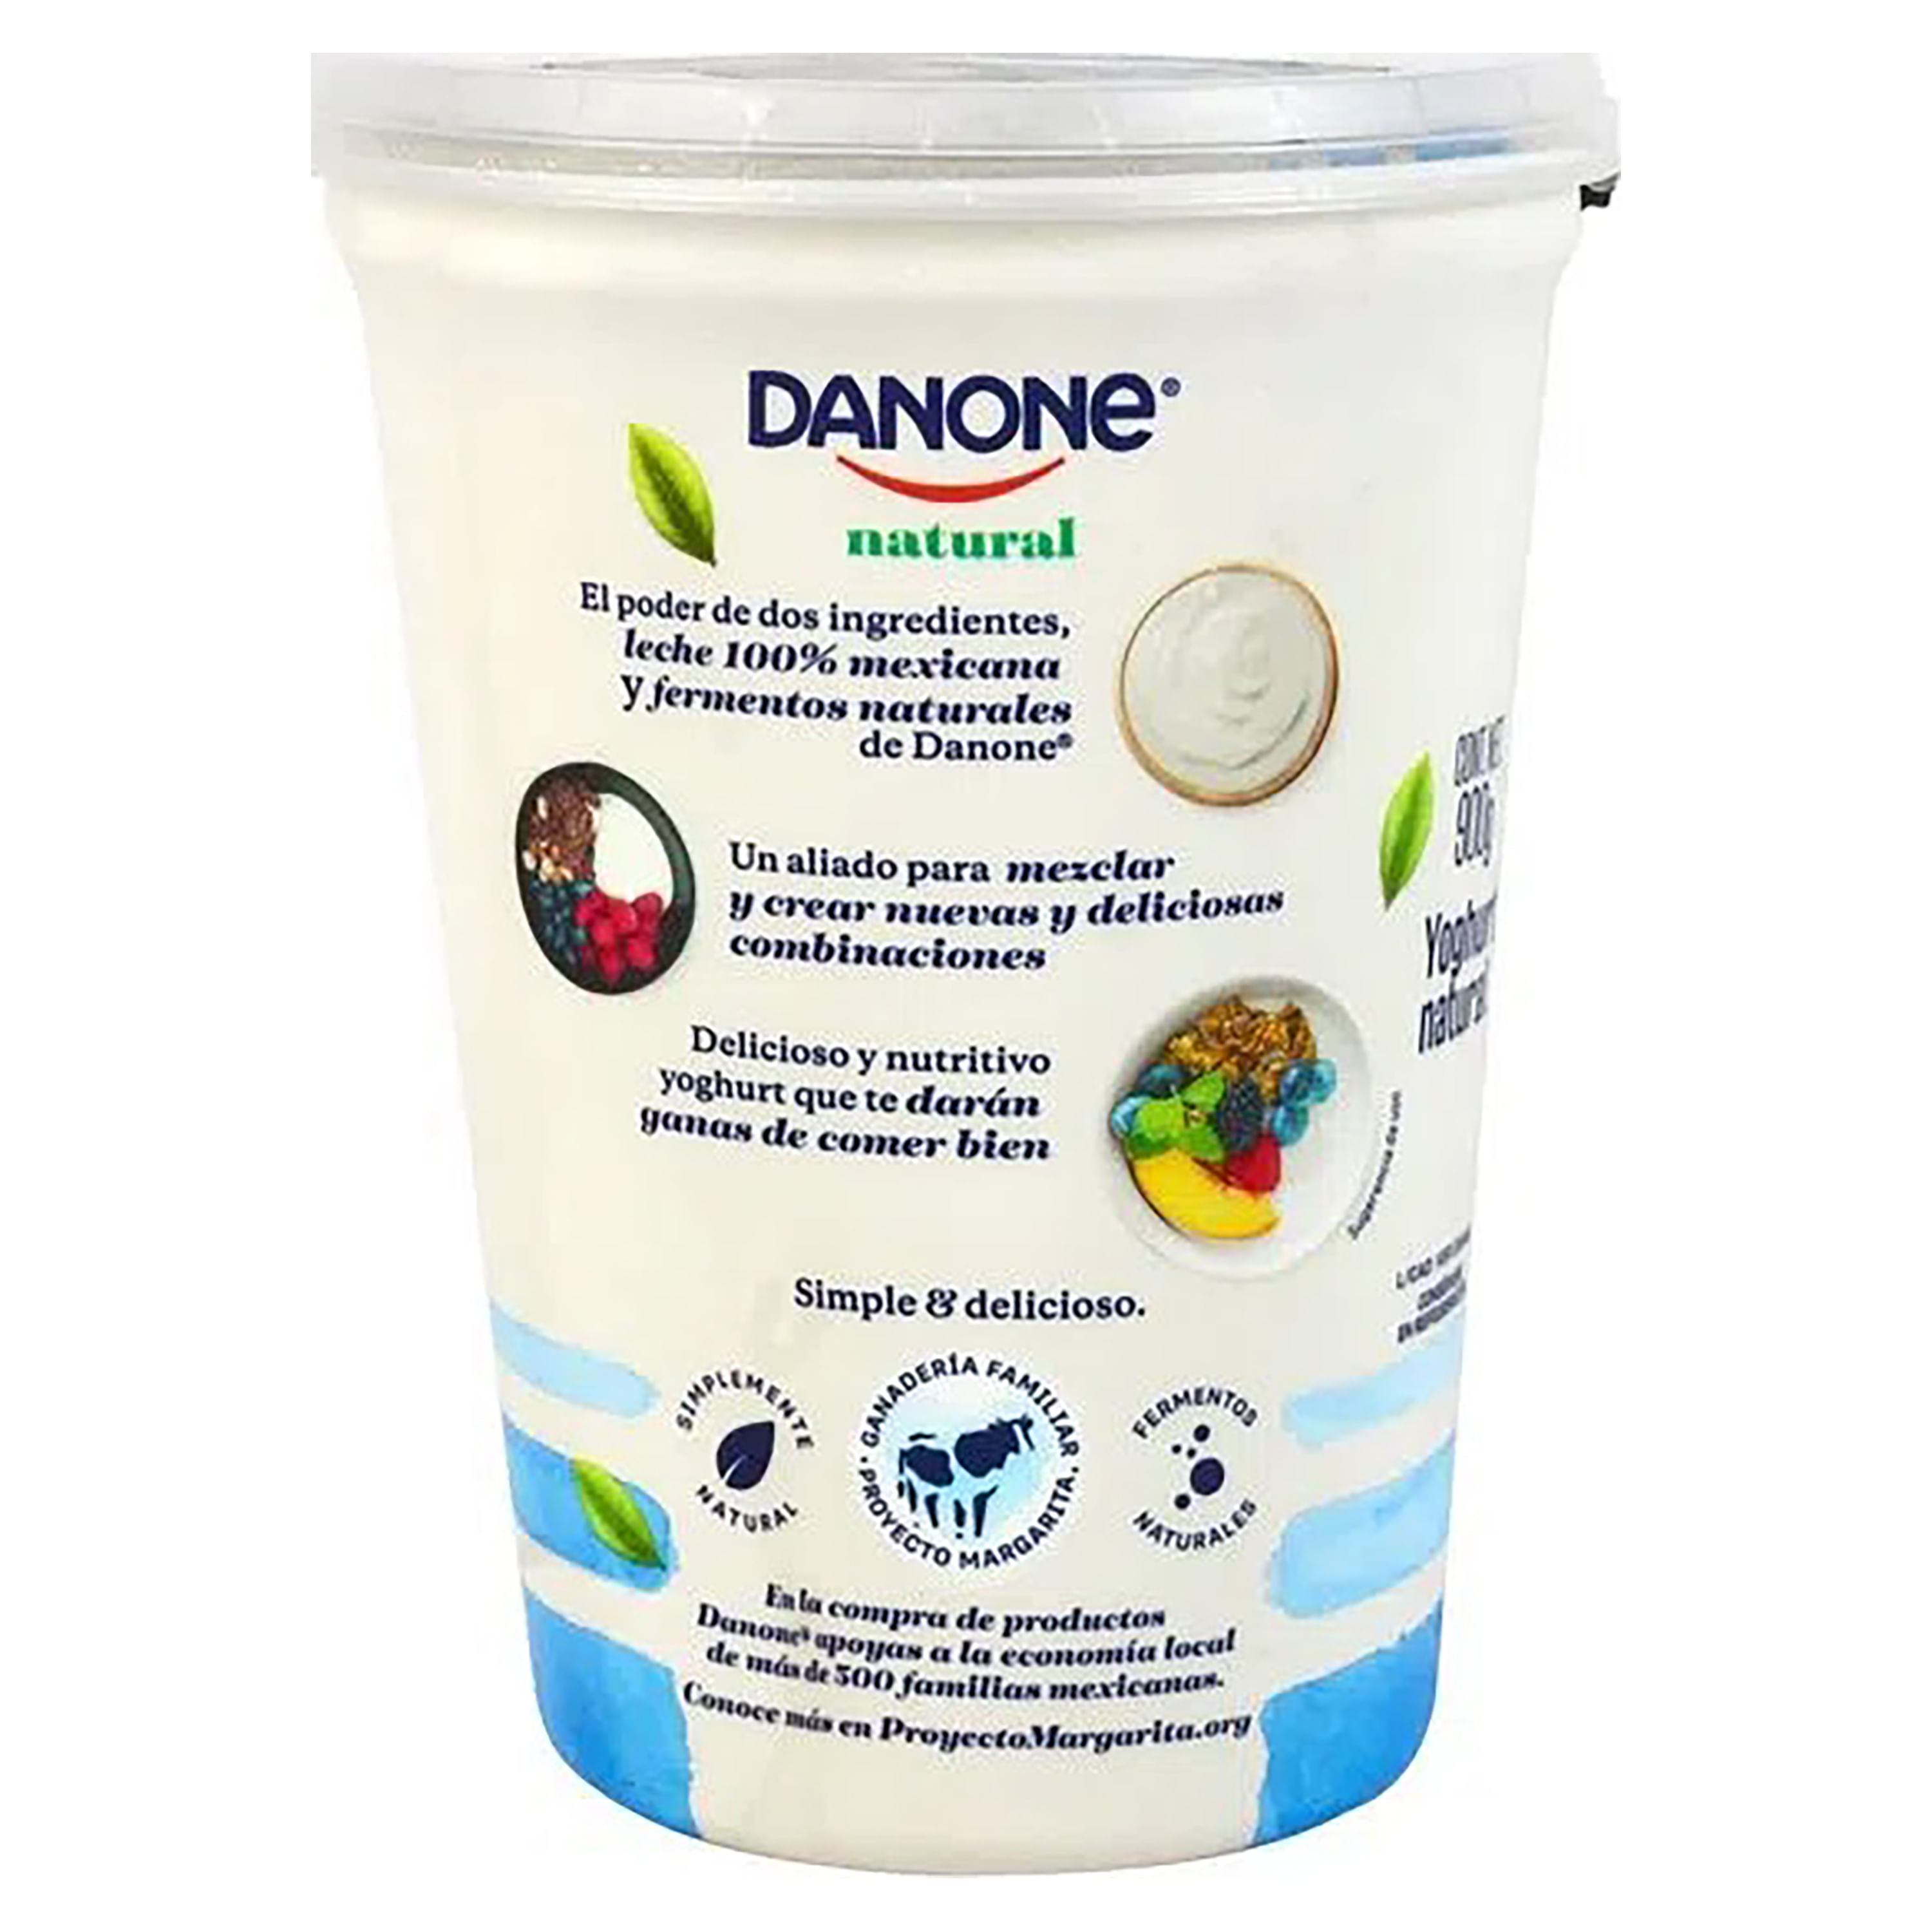 Danone - Las cosas naturales son simplemente extraordinarias. Como el yogur  natural Danone, que solo tiene leche y fermentos naturales 😋